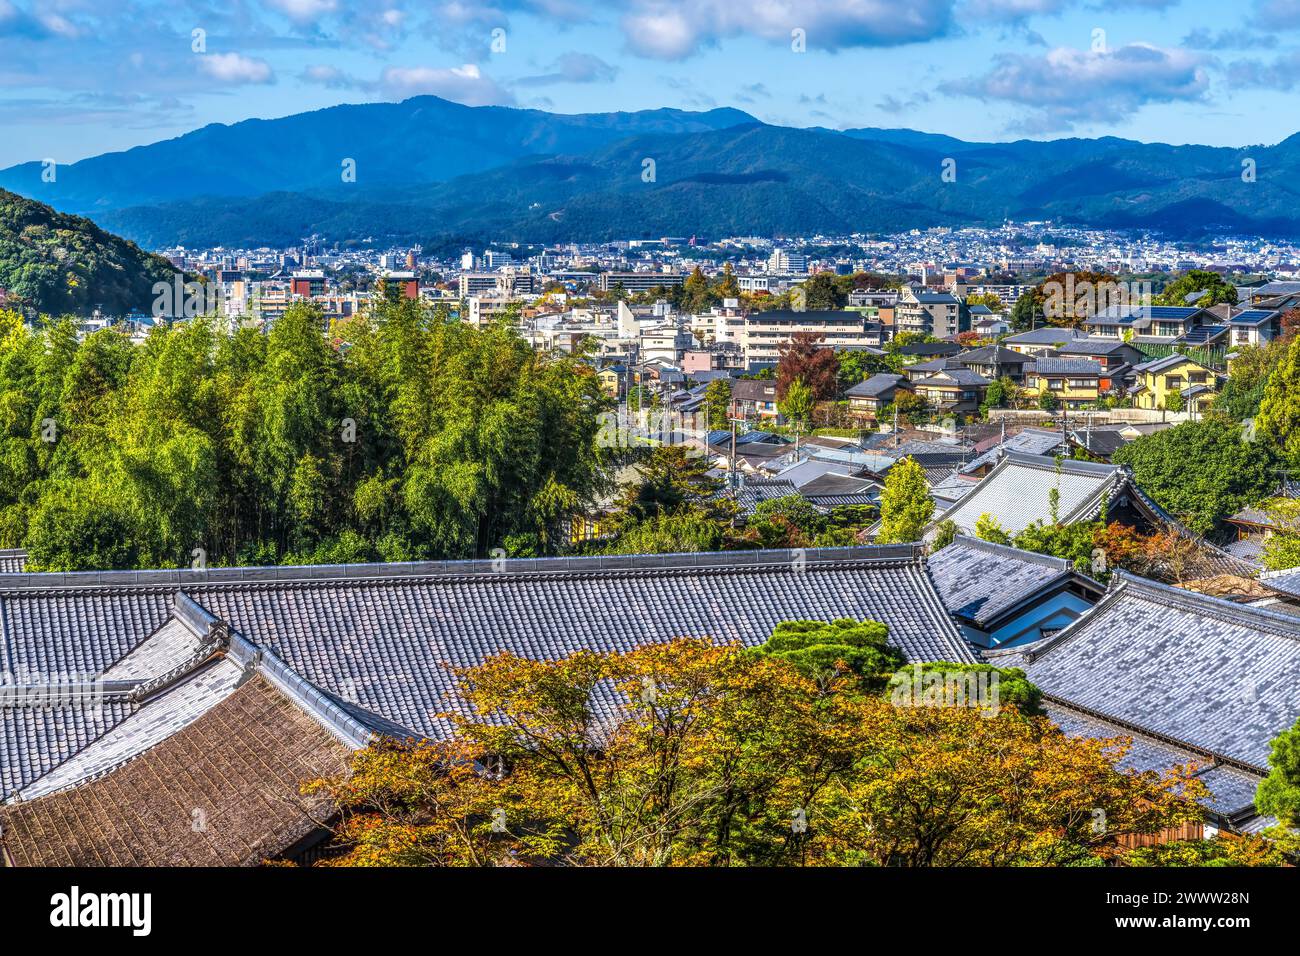 Bâtiments colorés paysage urbain montagnes Ginkakuji Silver Pavilion Zen Buddhist Temple Park paysage urbain Kyoto Japon. Également connu sous le nom de Temple Jishoji de Shini Banque D'Images